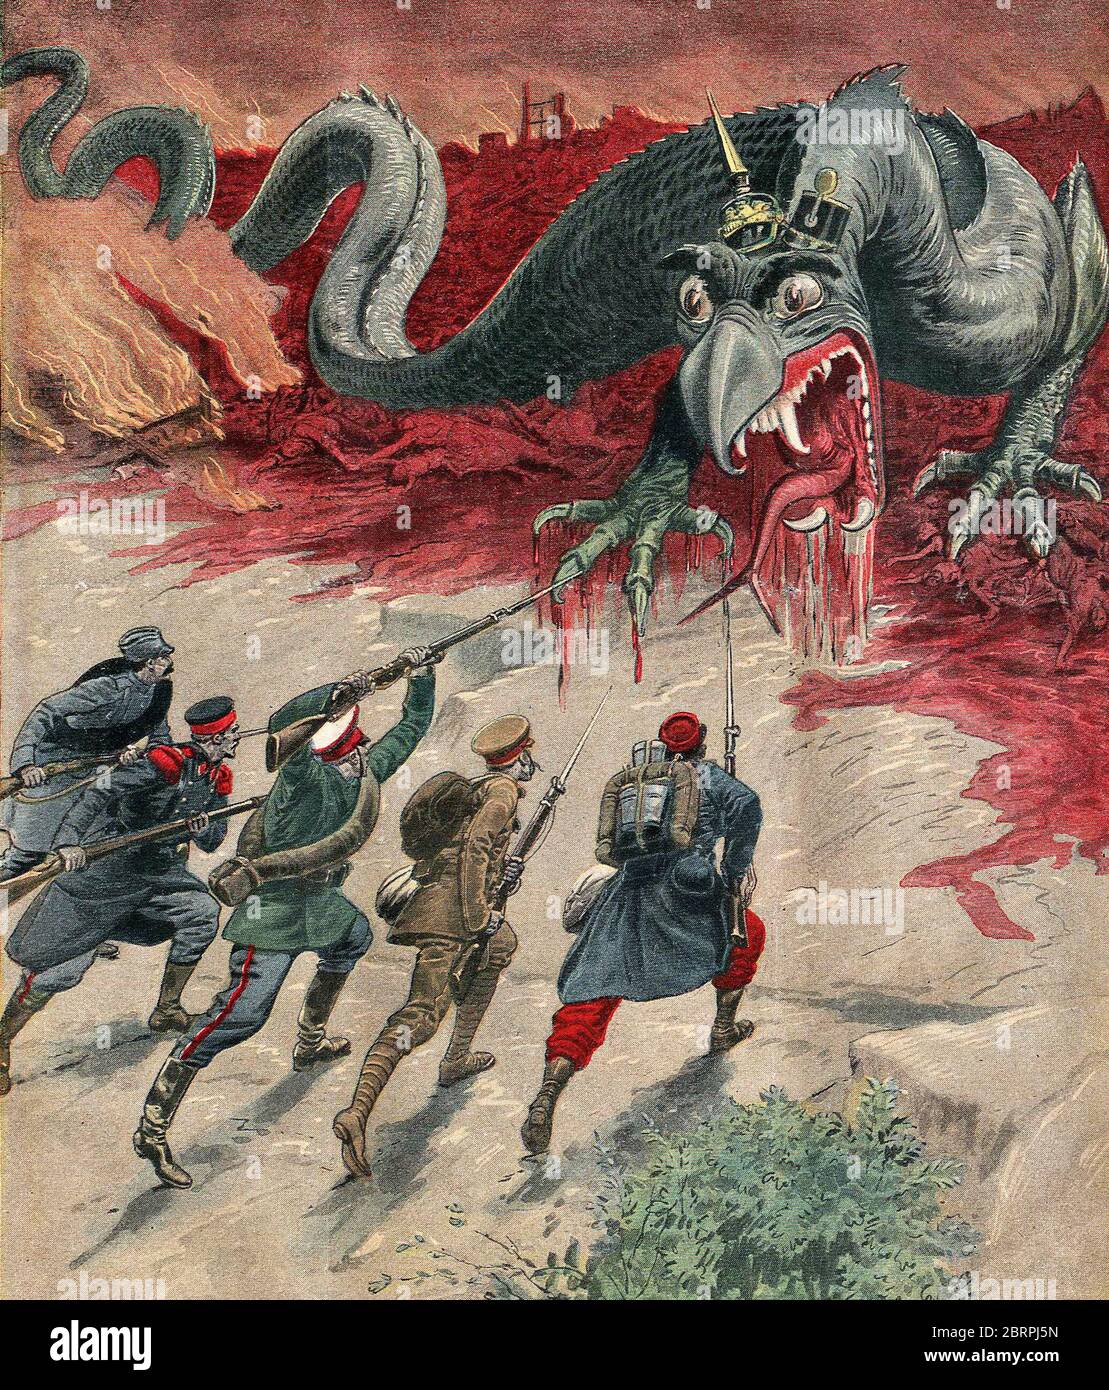 Sus au monstre! Tod für das Monster! Jagd auf das Monster und zerstören es !), Frankreich, 1914. Wilhelm II. (1859-1941) deutscher Kaiser und König von Preußen. Stockfoto